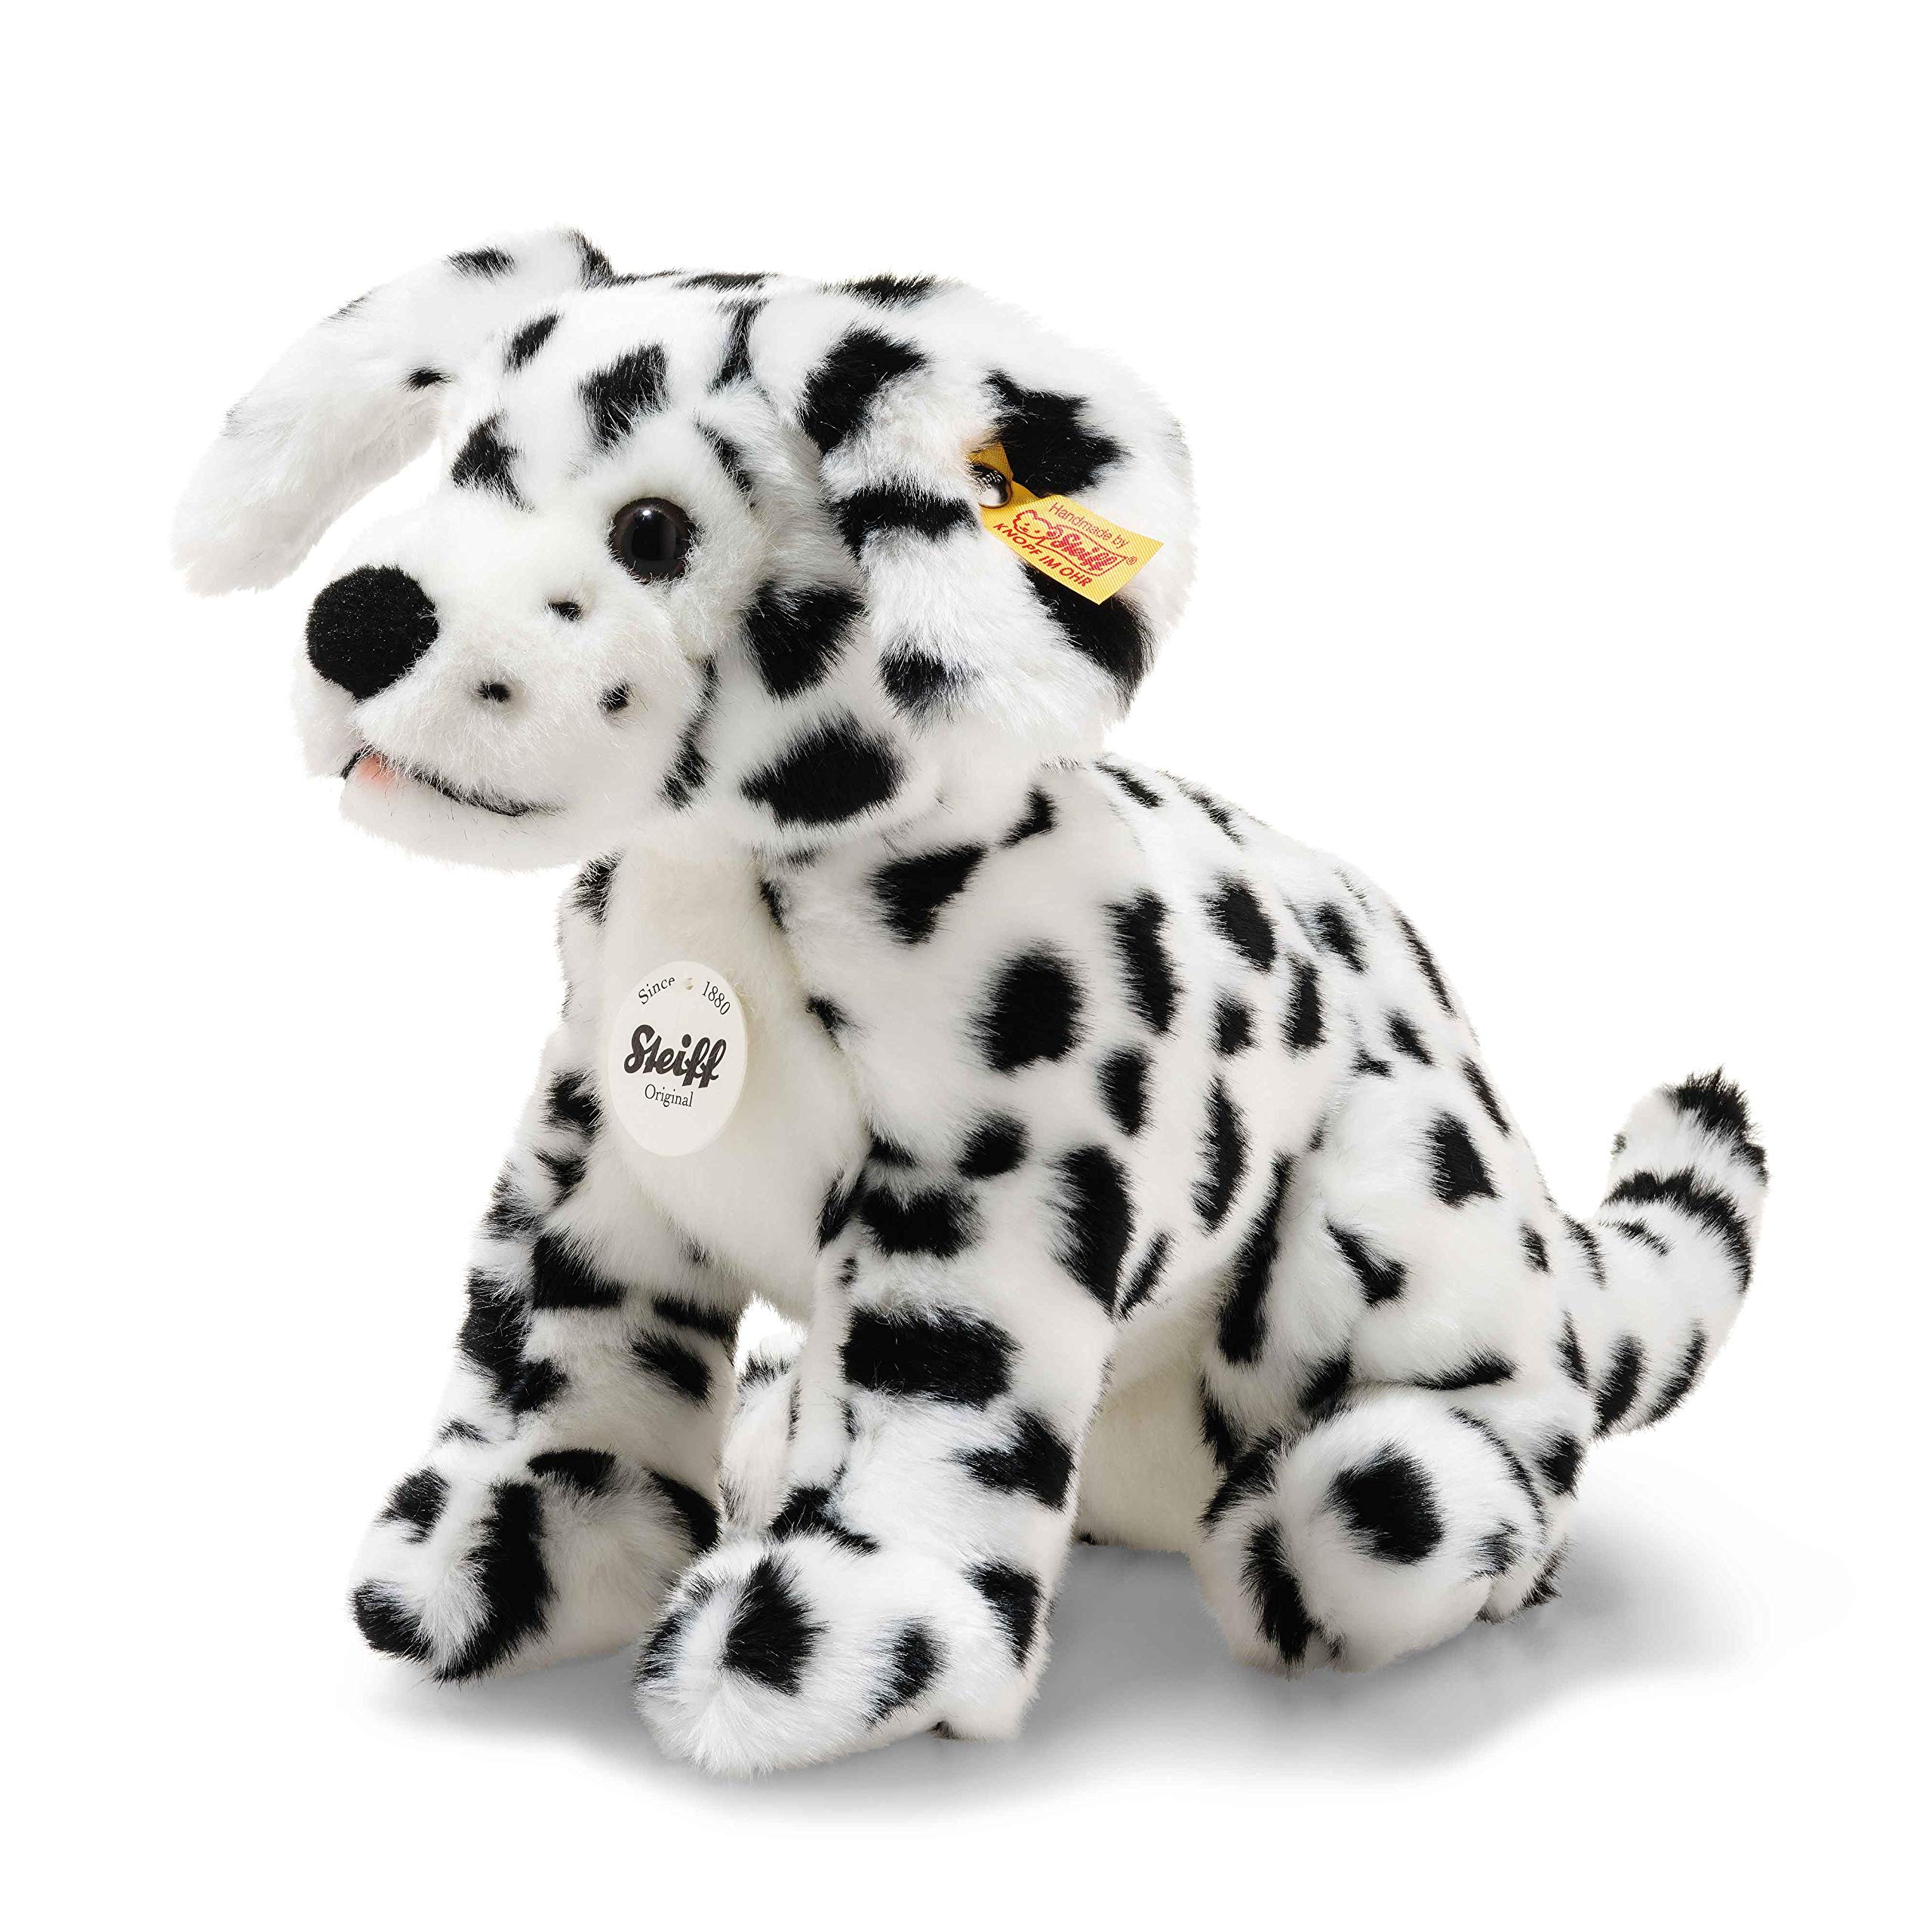 Steiff 076916 - Original Plüschtier Hund Lupi Dalmatiner, Kuscheltier ca. 26 cm, Markenplüsch Knopf im Ohr“, Schmusefreund für Babys von Geburt an, weiß/schwarz